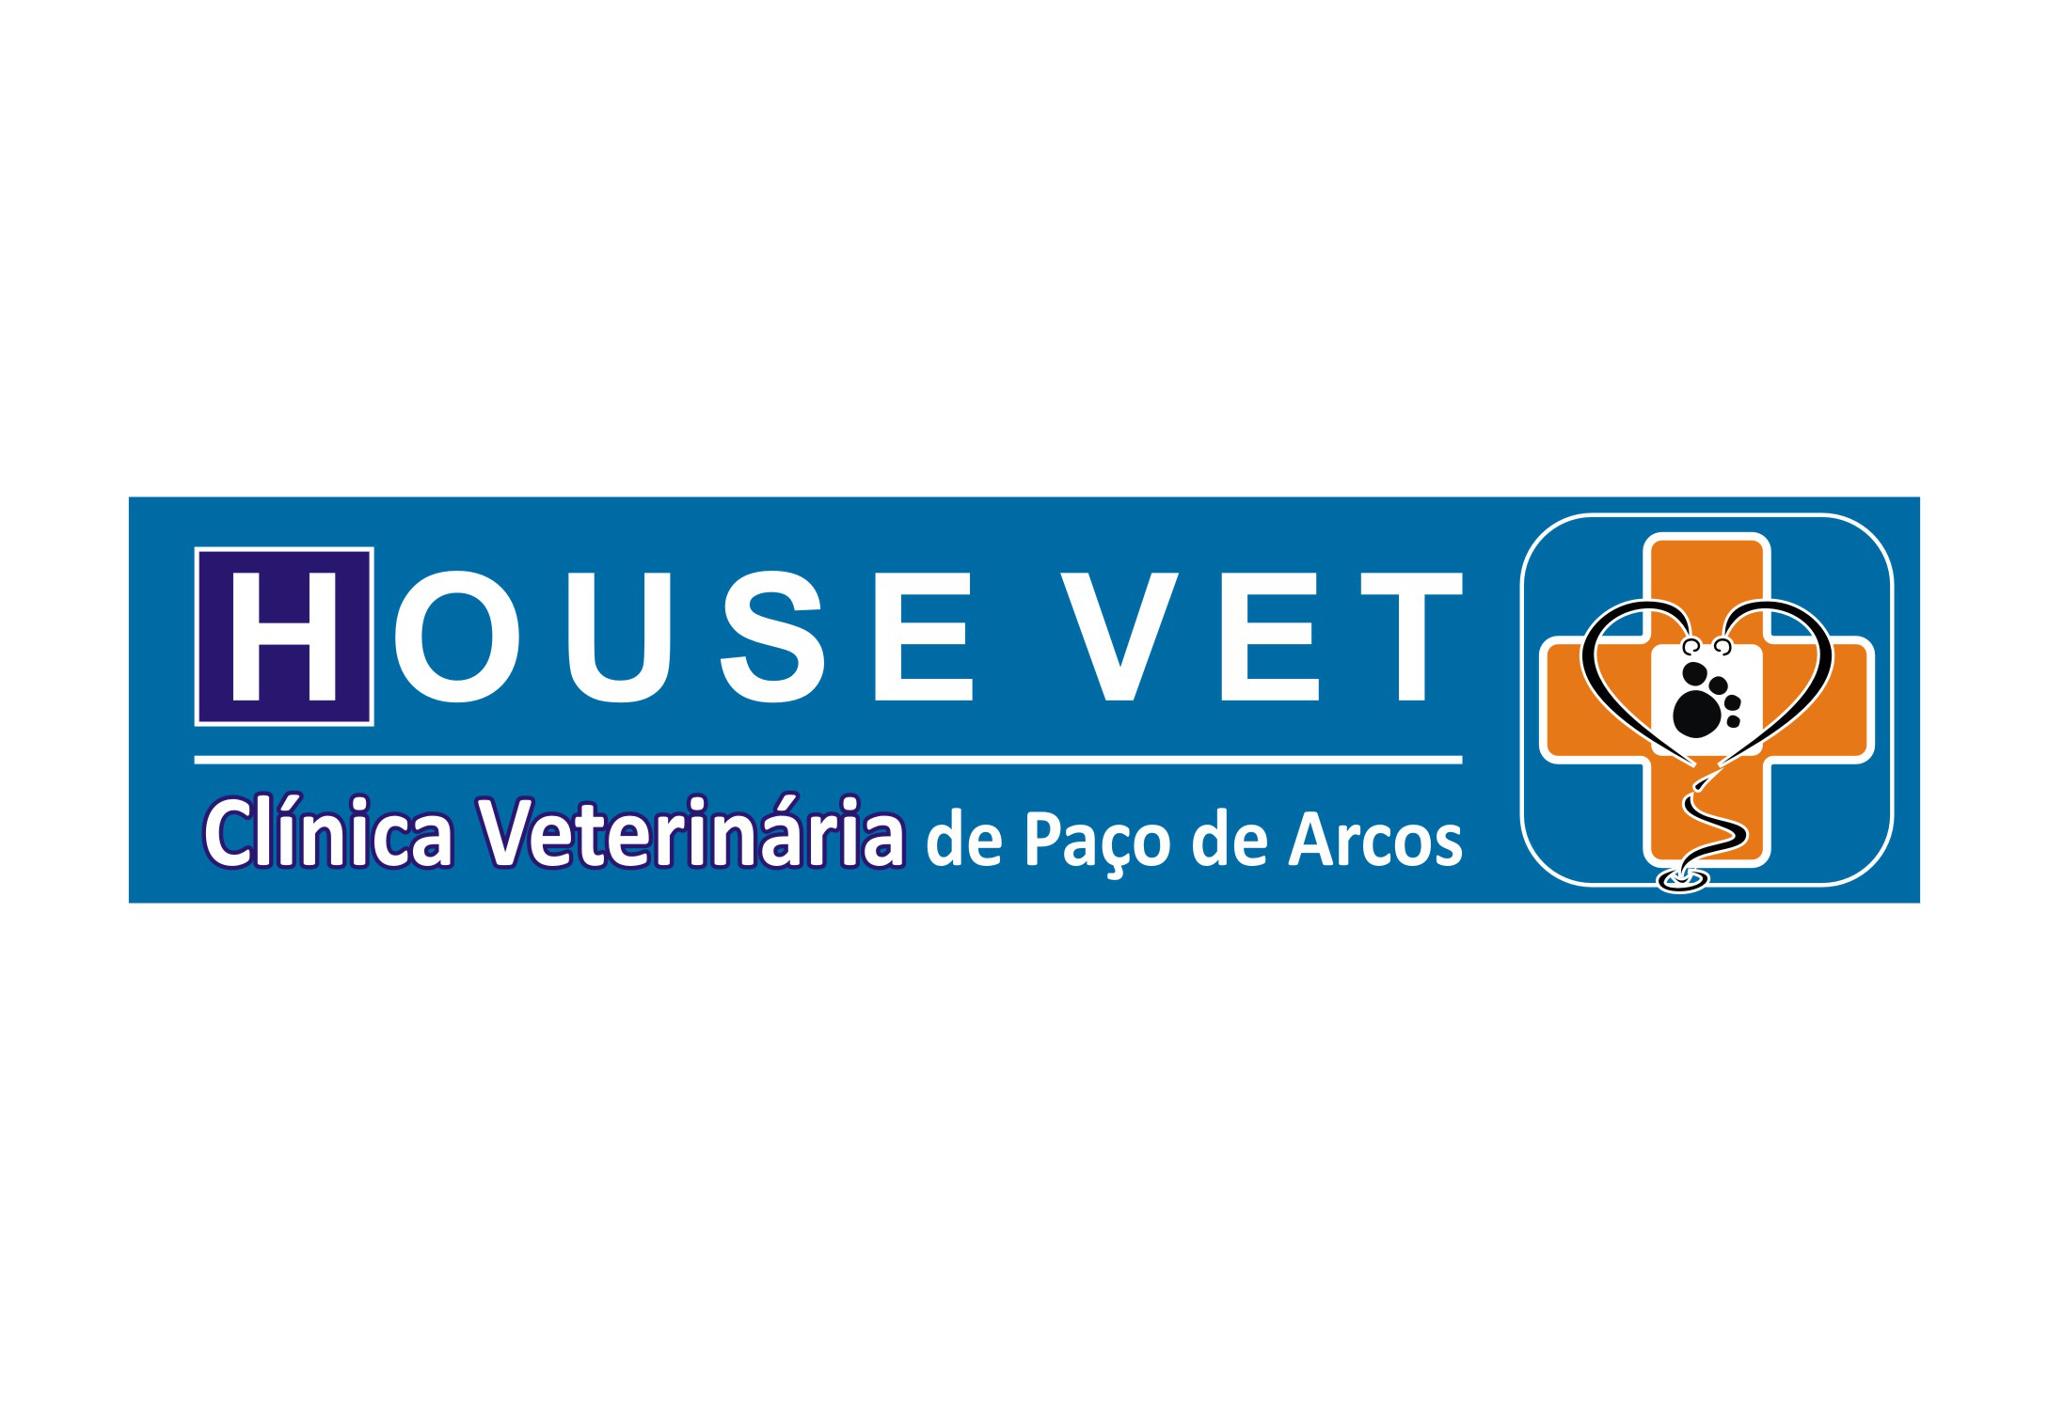 House Vet - Hosp. de Paço de Arcos